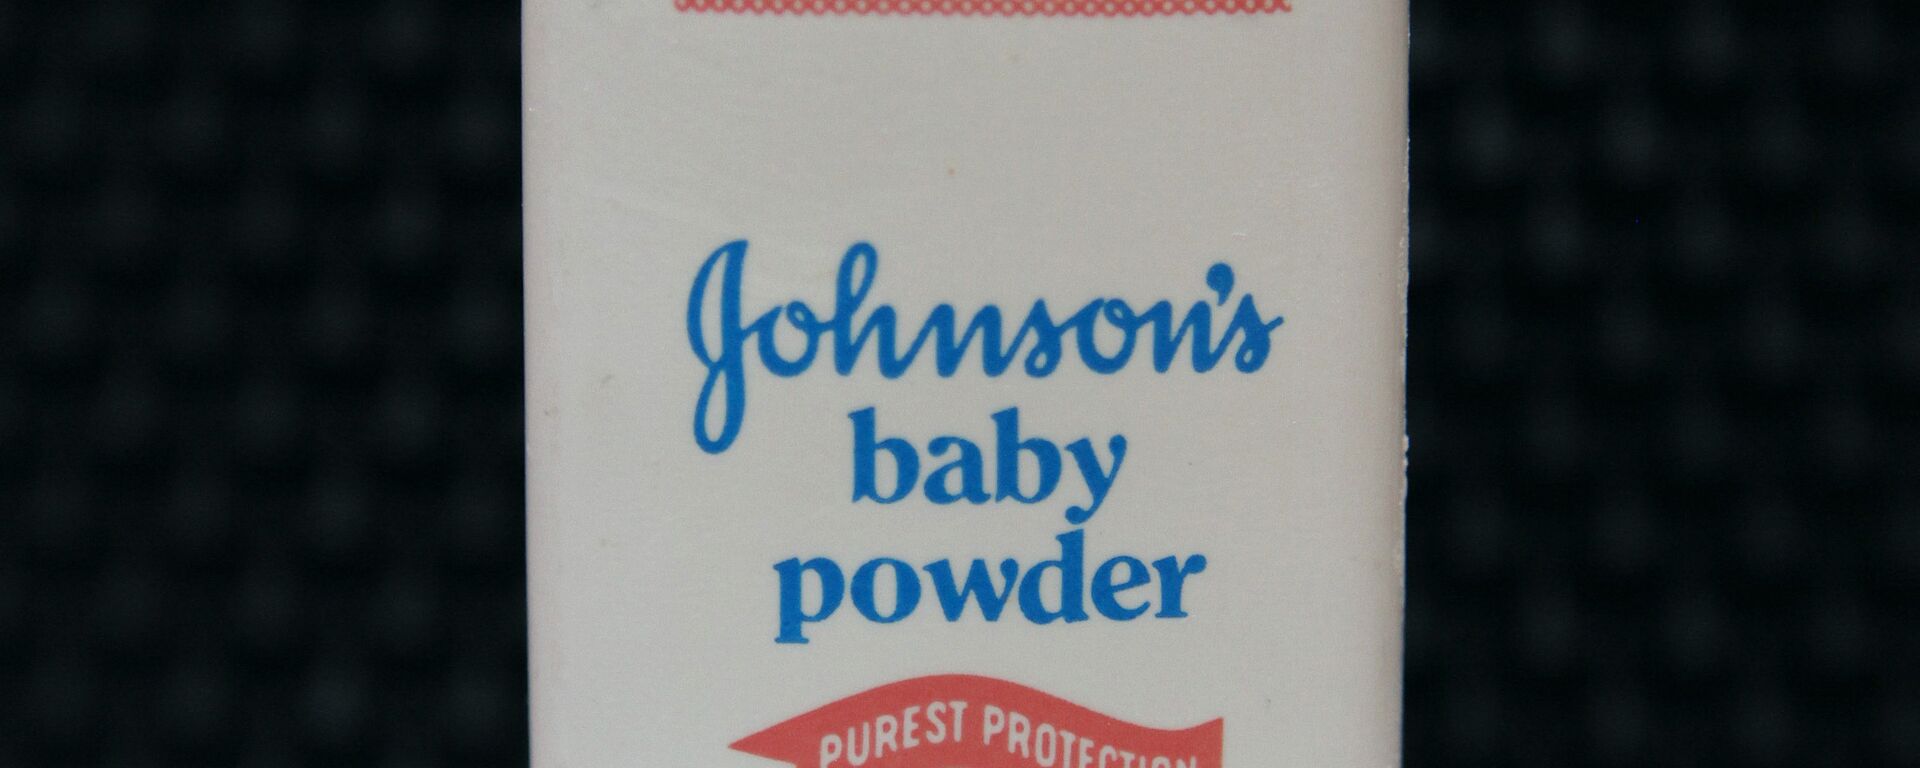 Johnson & Johnson bebek pudrası - Sputnik Türkiye, 1920, 18.11.2017